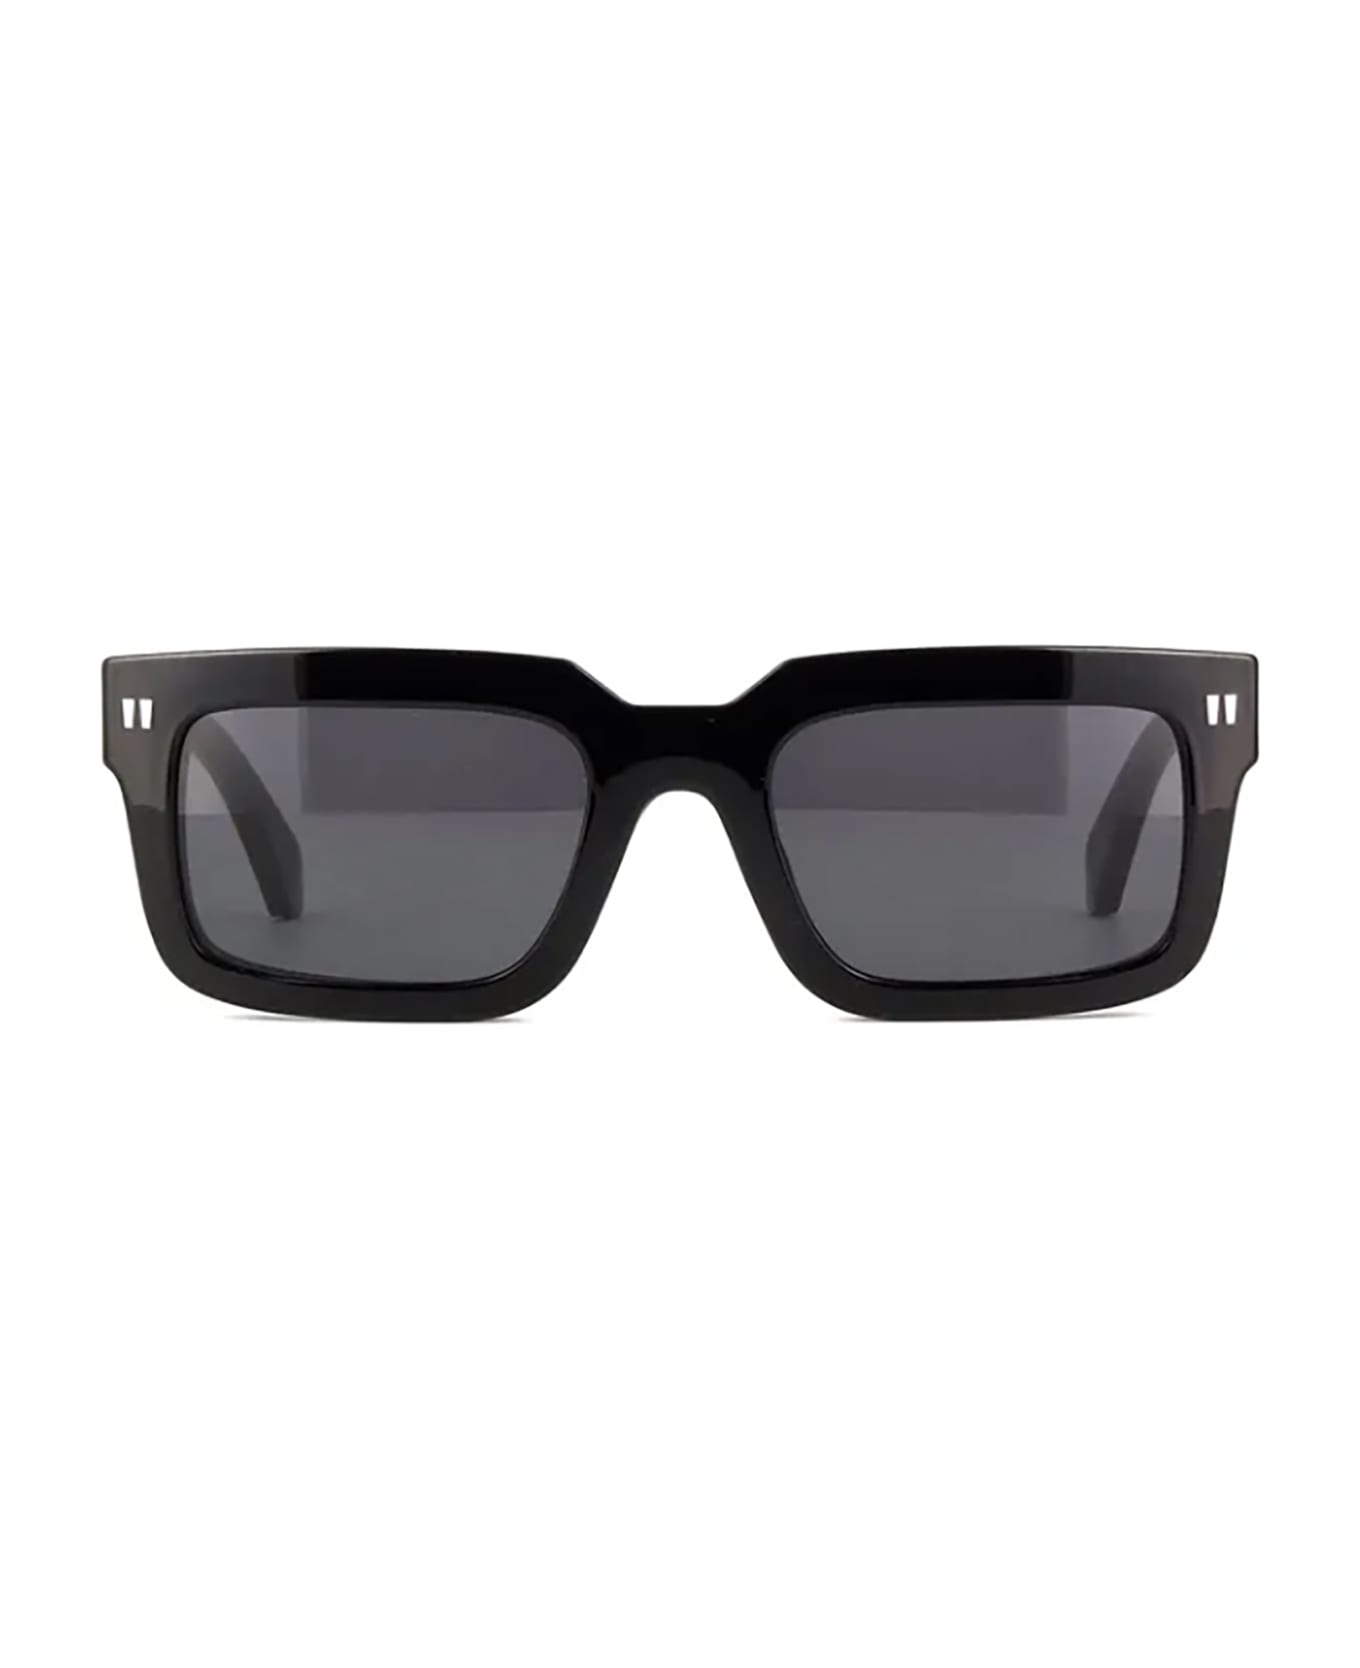 Off-White OERI130 CLIP ON Sunglasses - Black